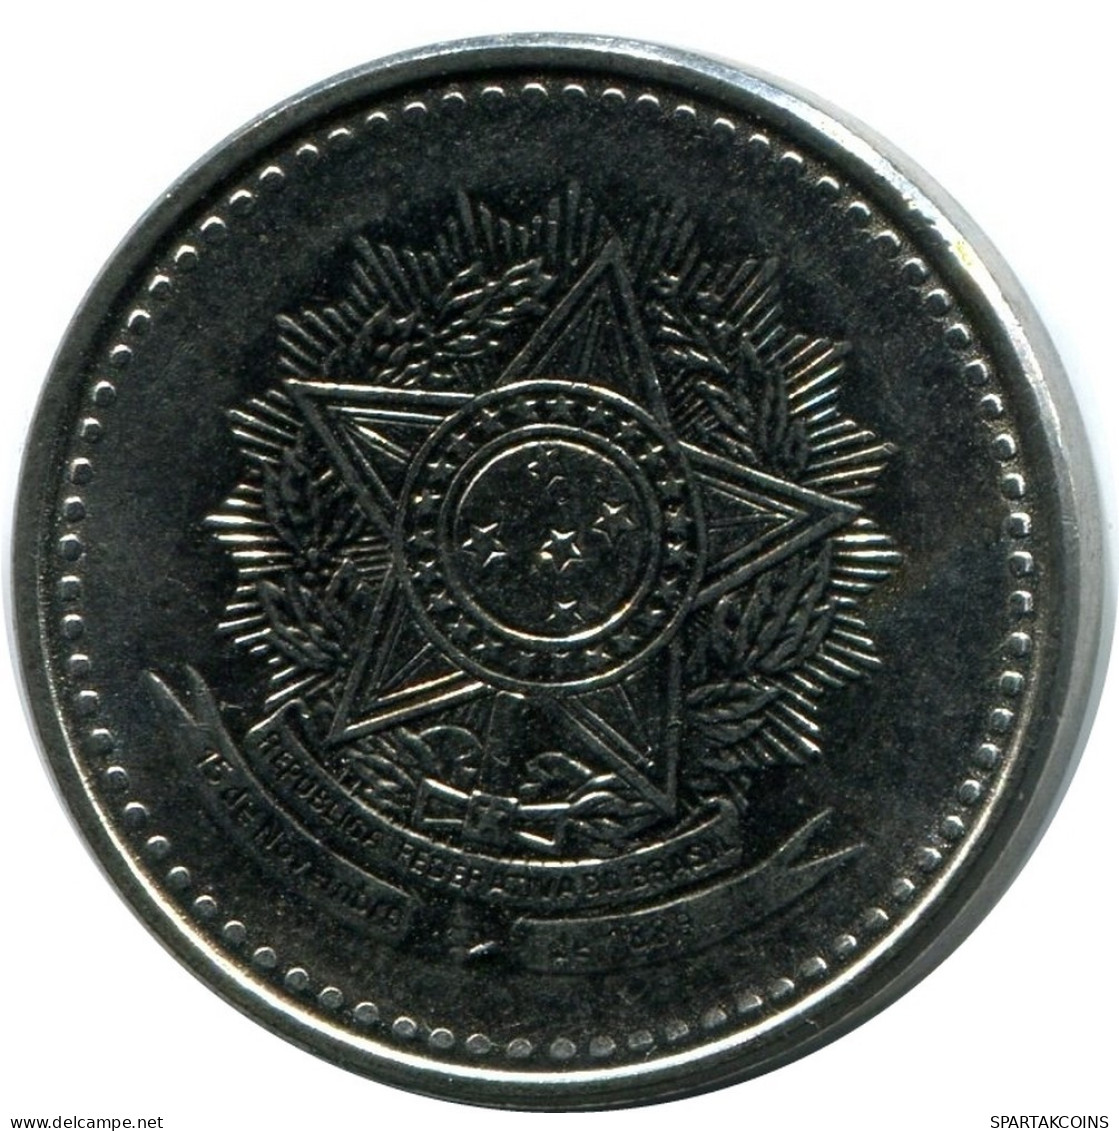 1 CRUZADO 1987 BBASIL BRAZIL Moneda UNC #M10275.E.A - Brazilië